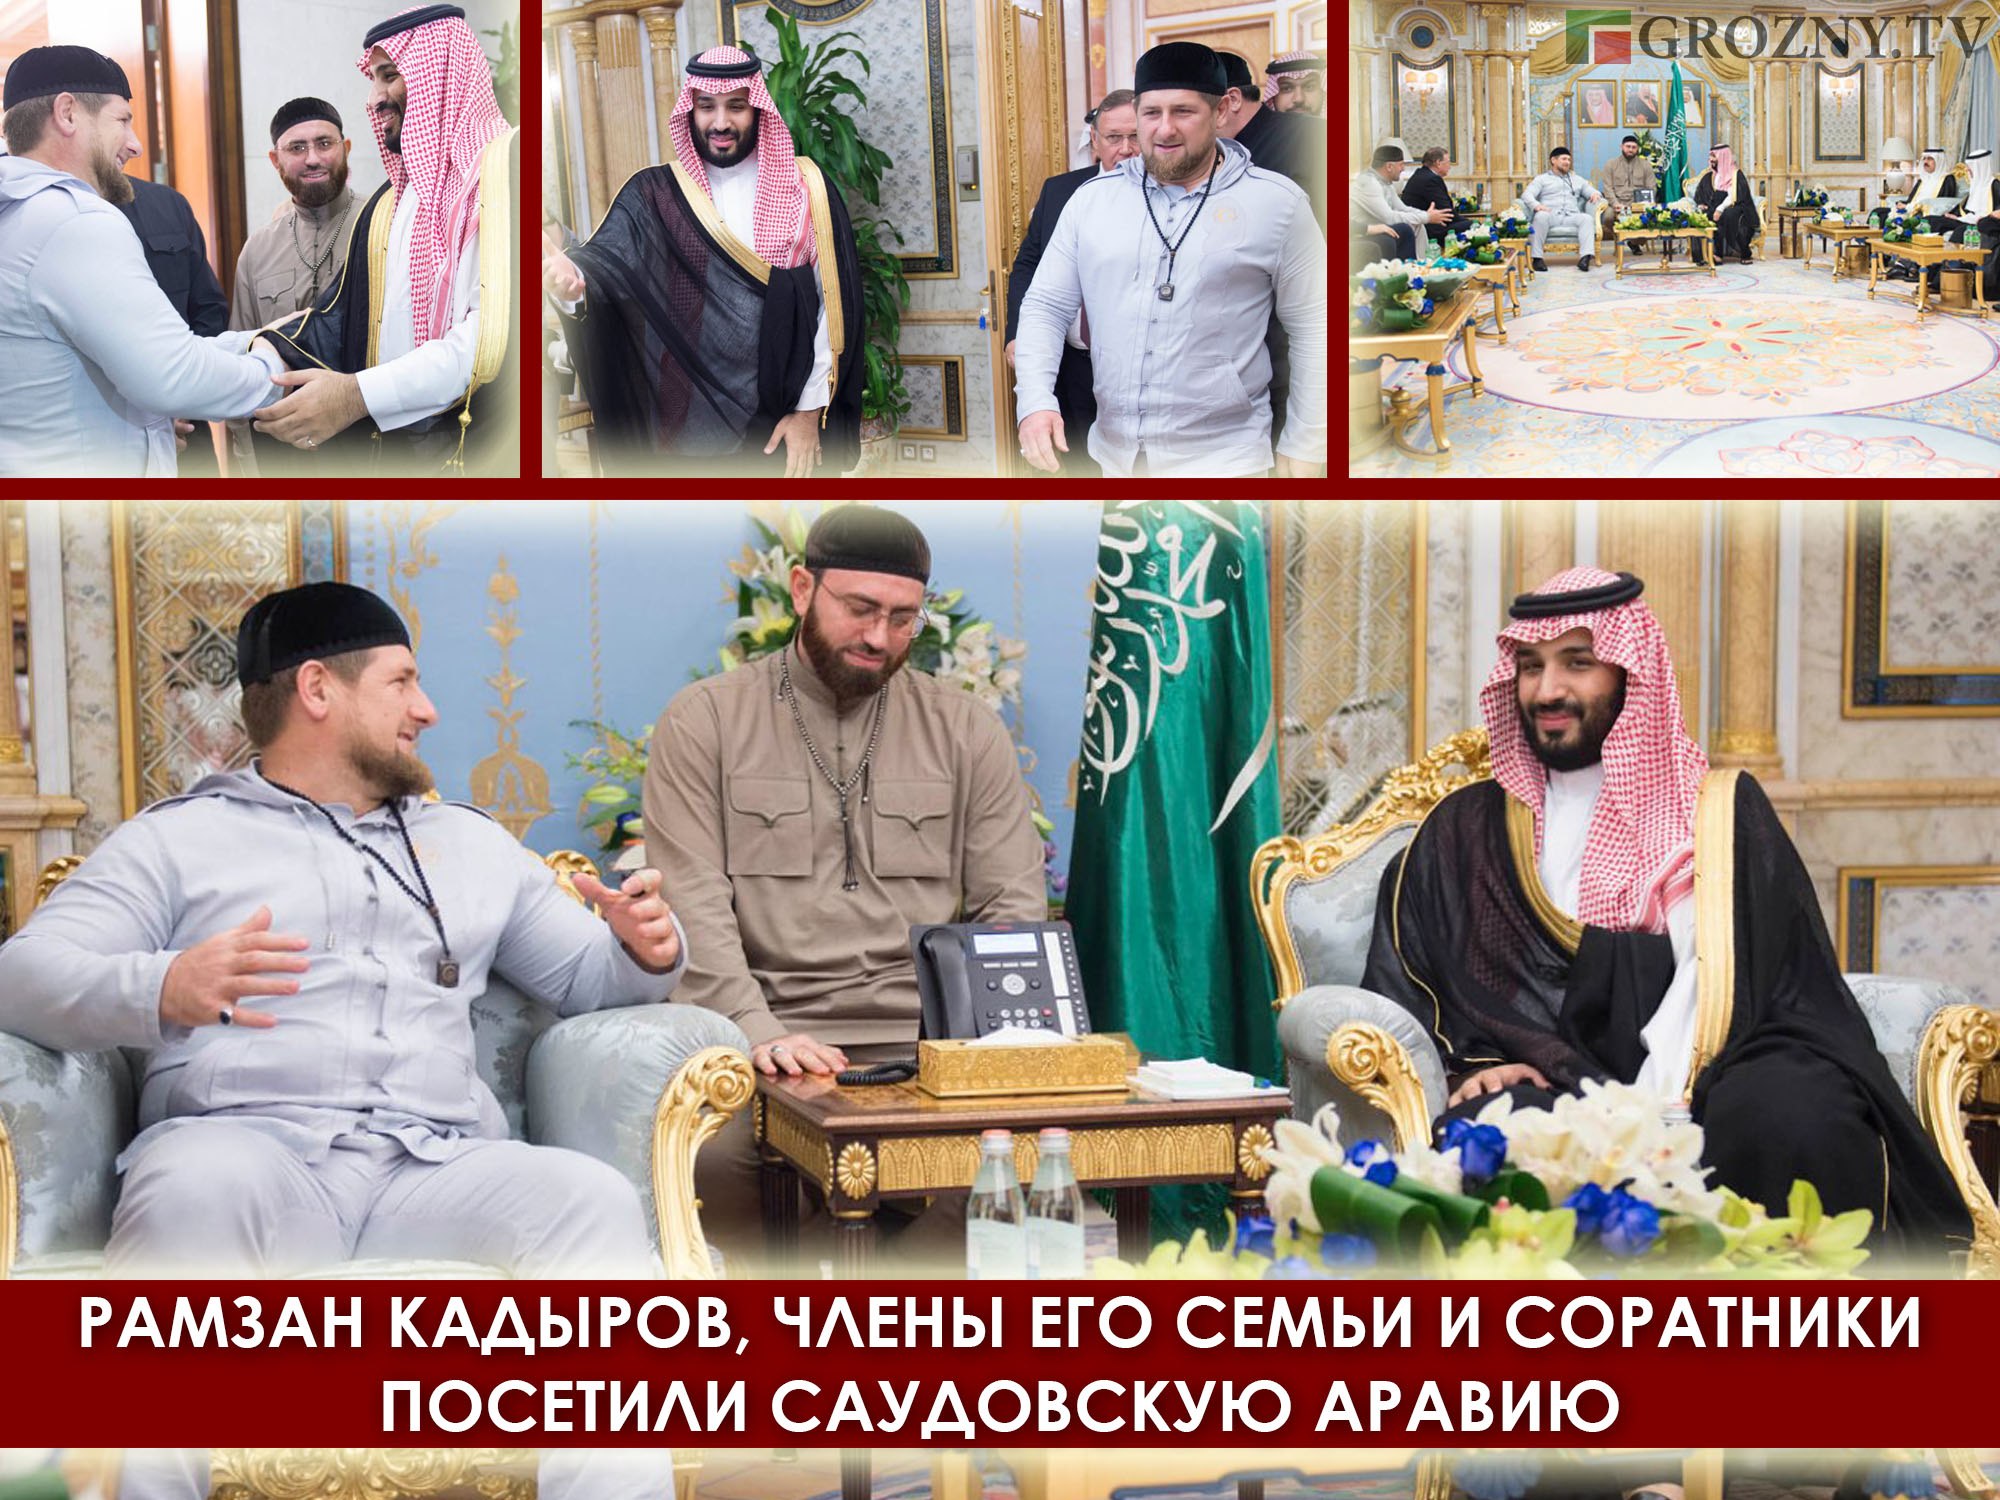 Рамзан Кадыров, члены его семьи и соратники посетили Саудовскую Аравию